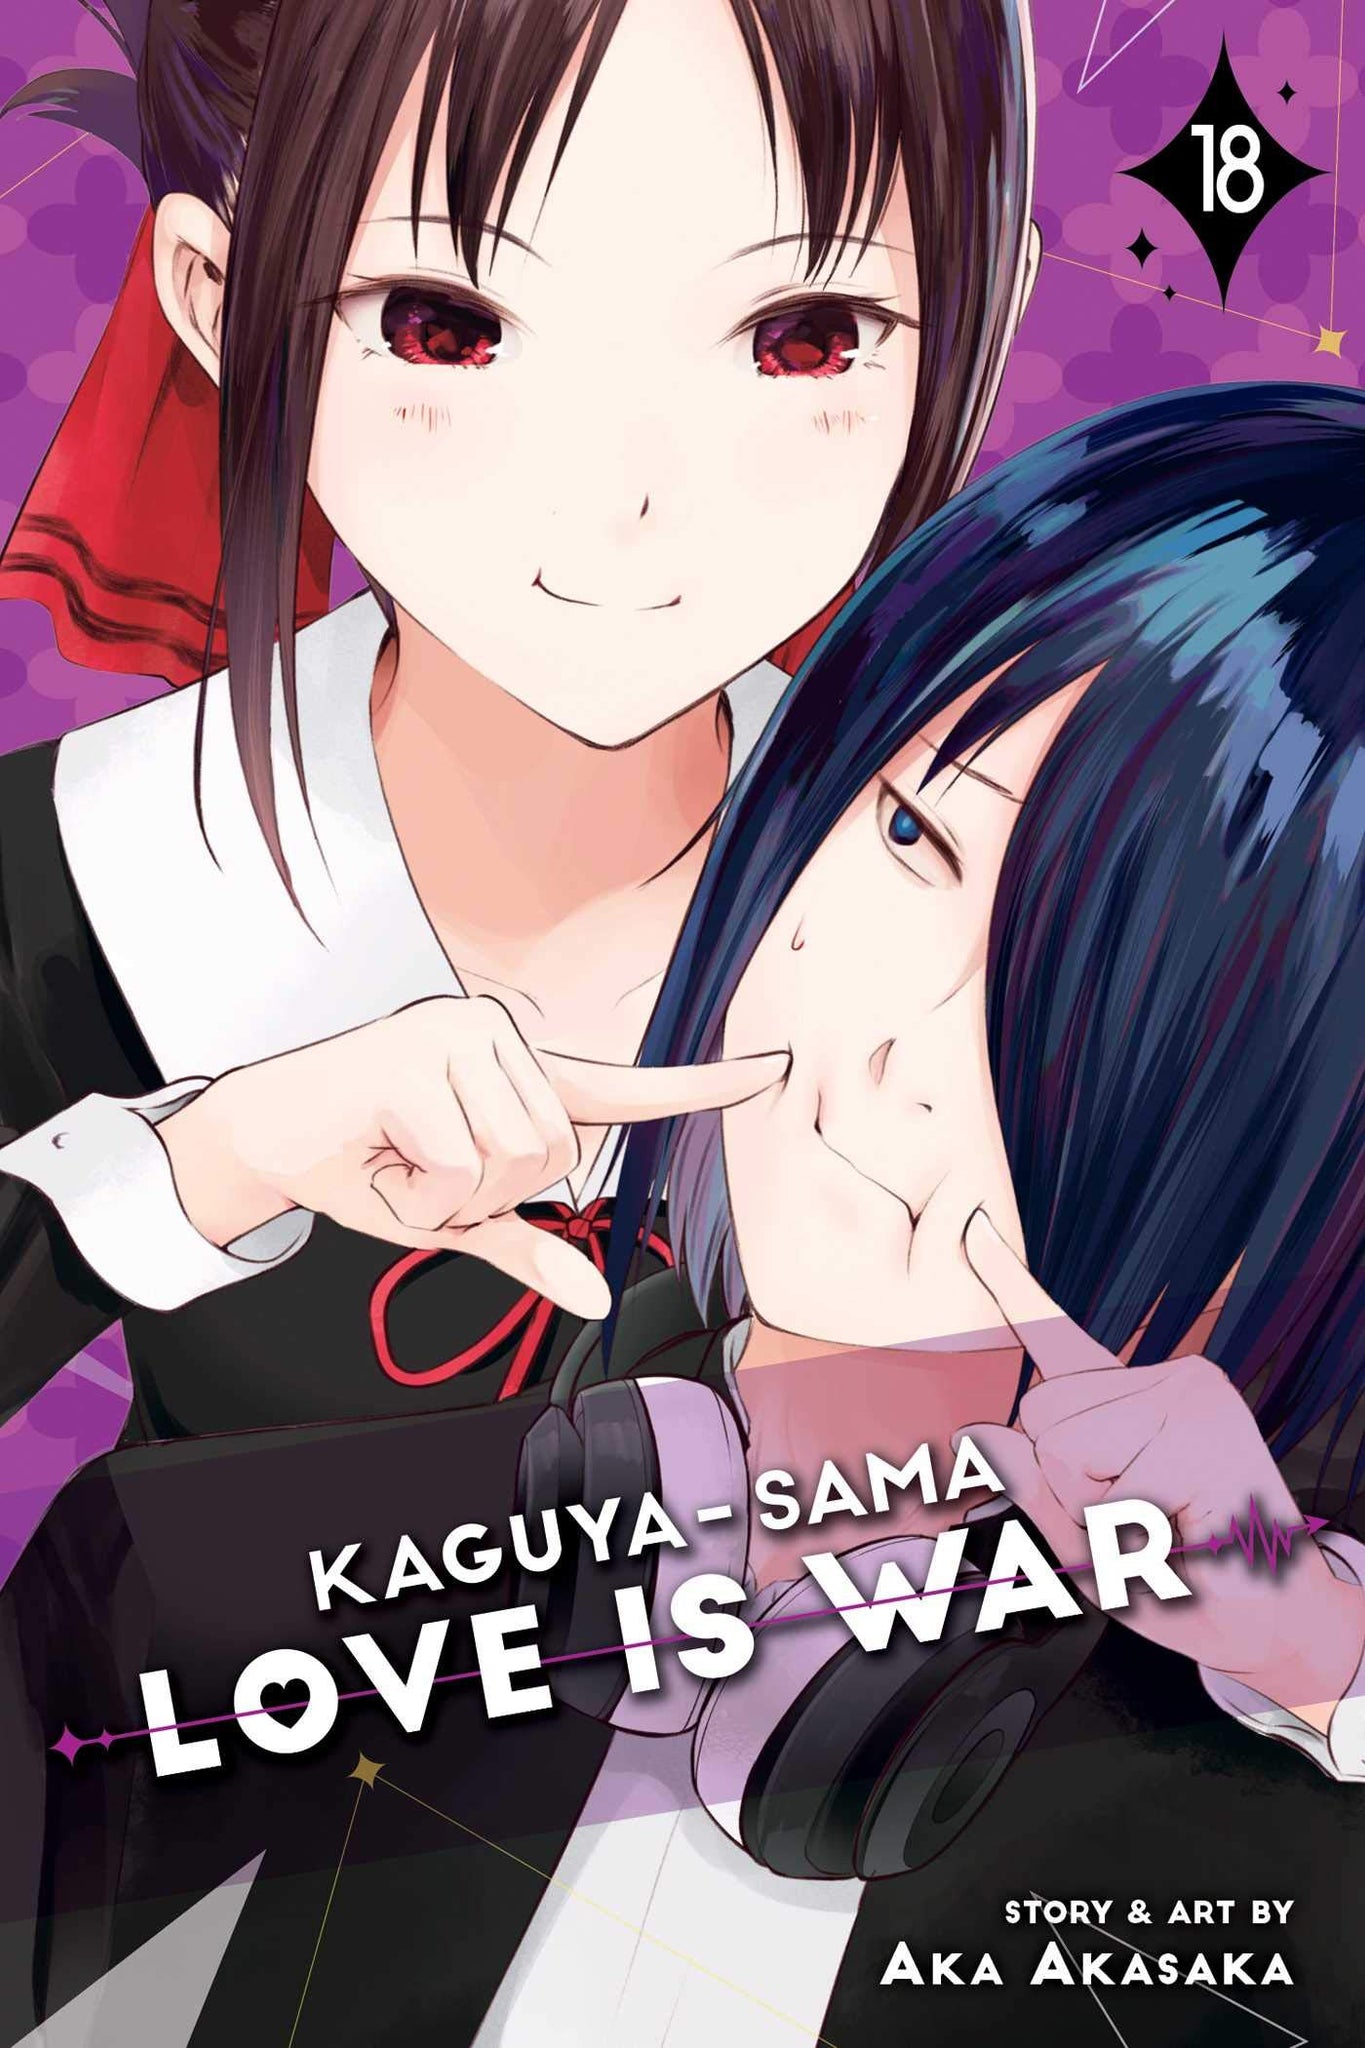 Kaguya-sama : Love Is War #18 - Paperback